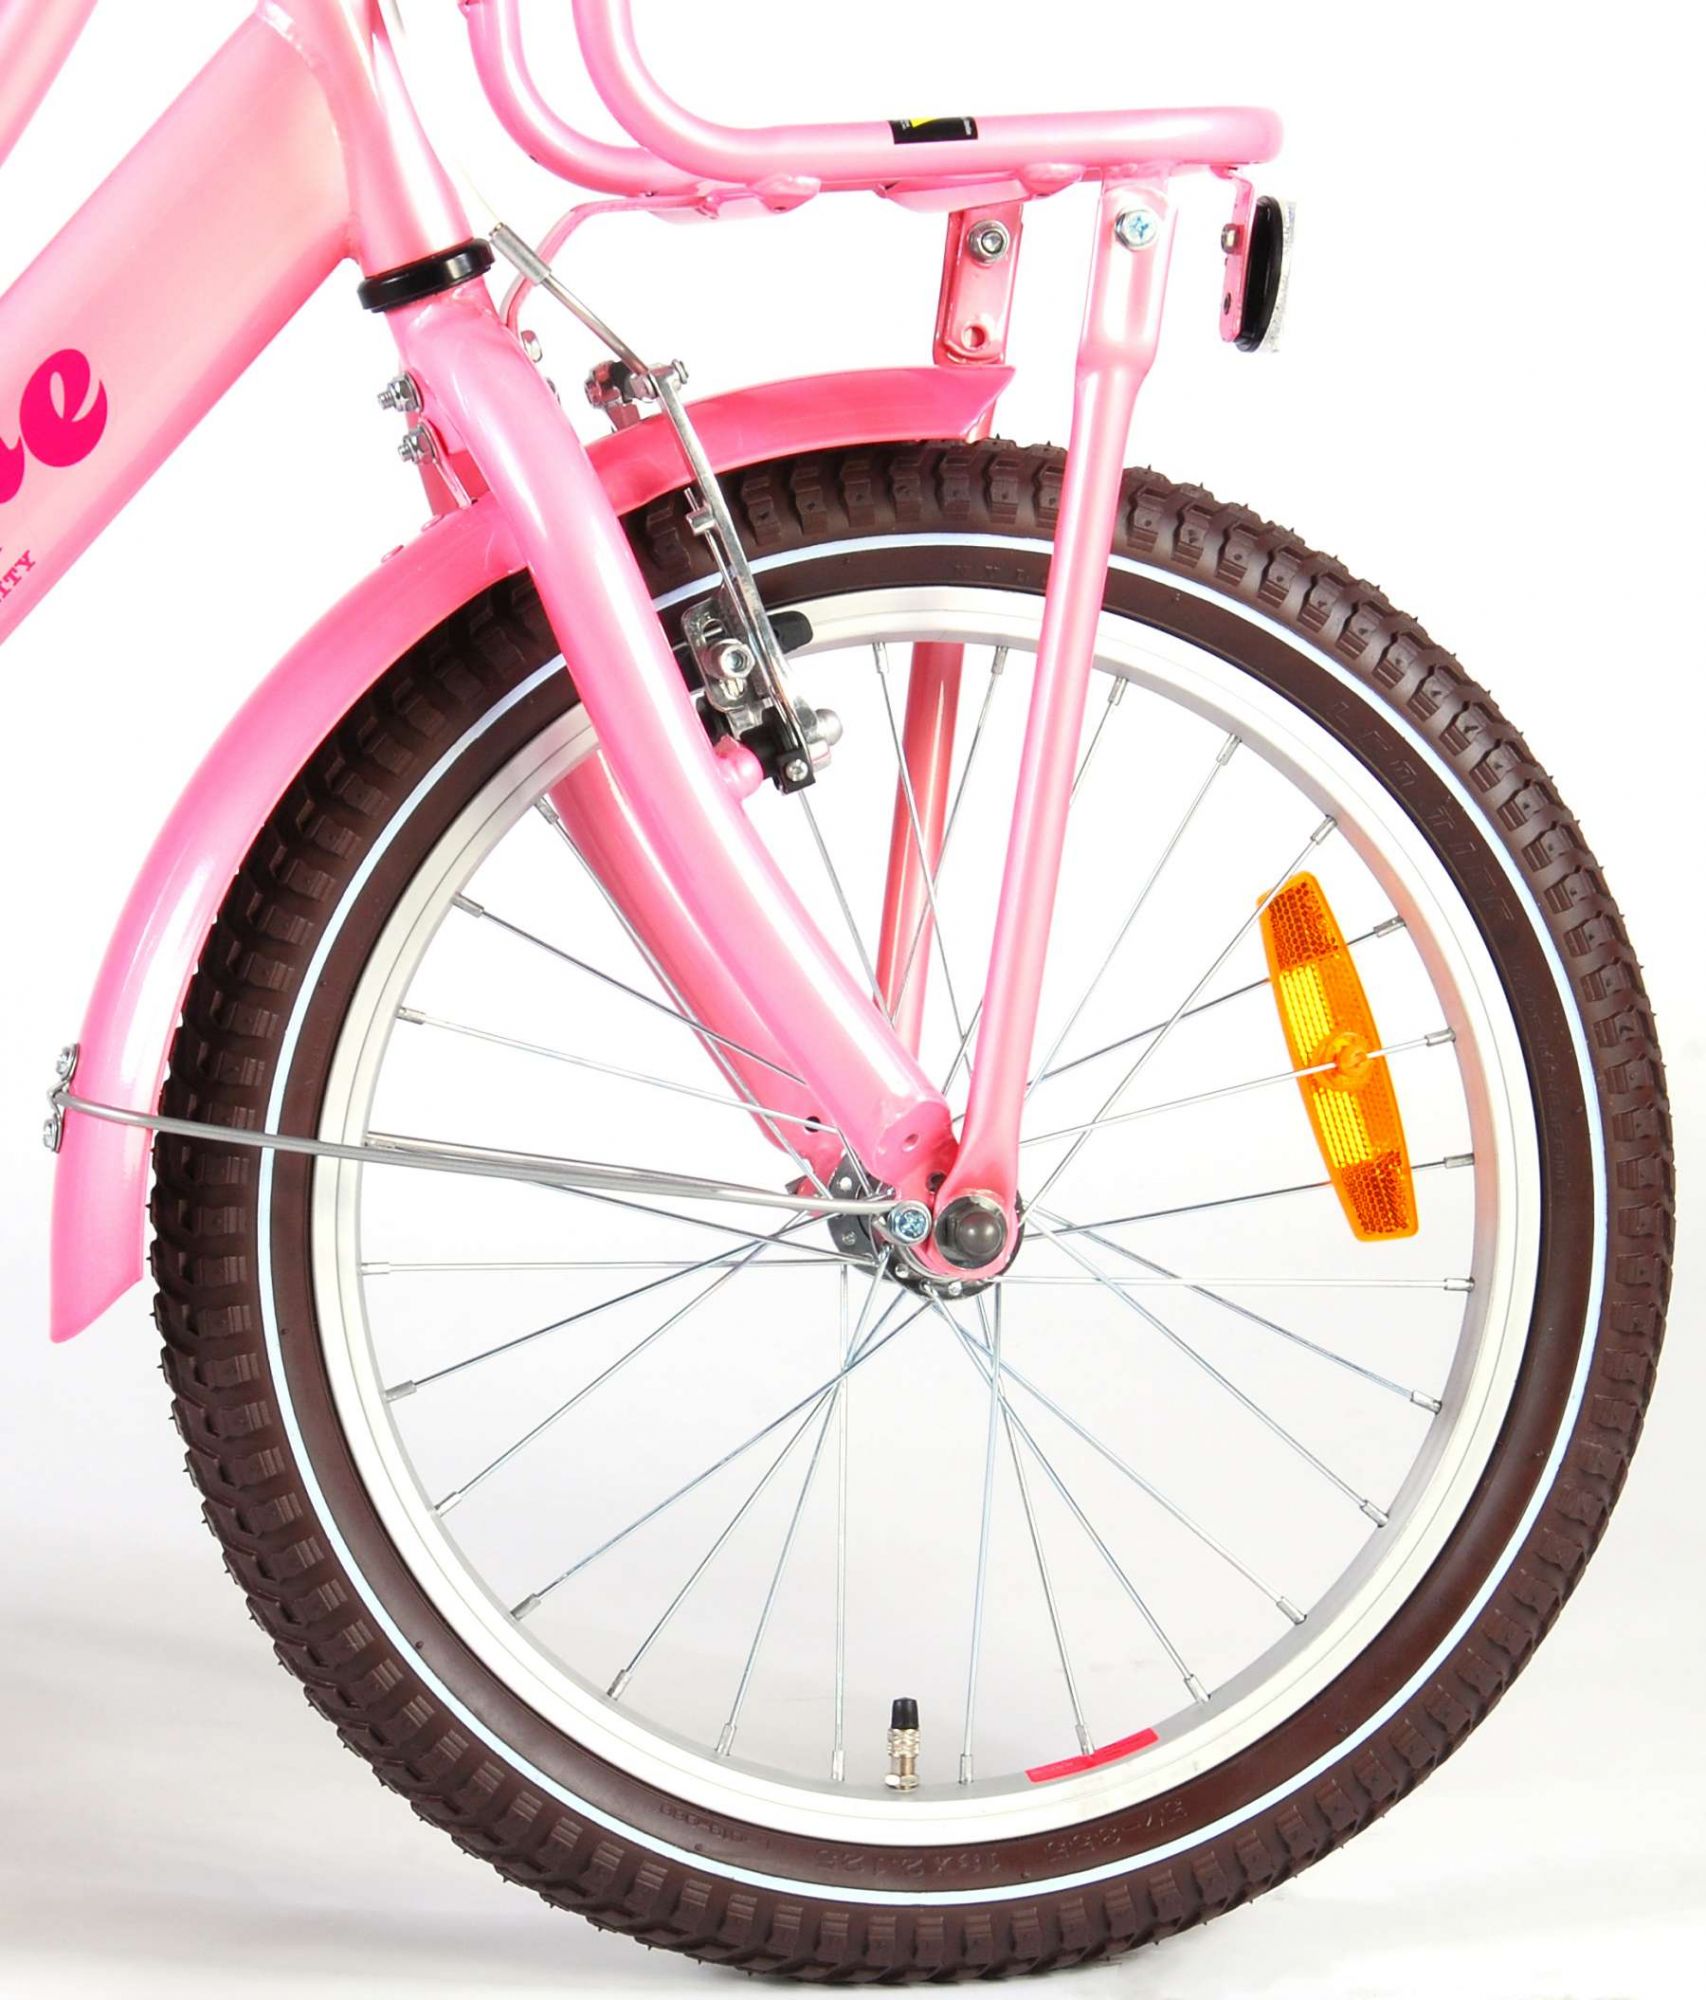 Велосипед 18 розовый. Велосипед Butler 18 розовый. Велосипед розовый Supreme Sakoni. Forward 18 розовый. Dk-1203 велосипед розовый.